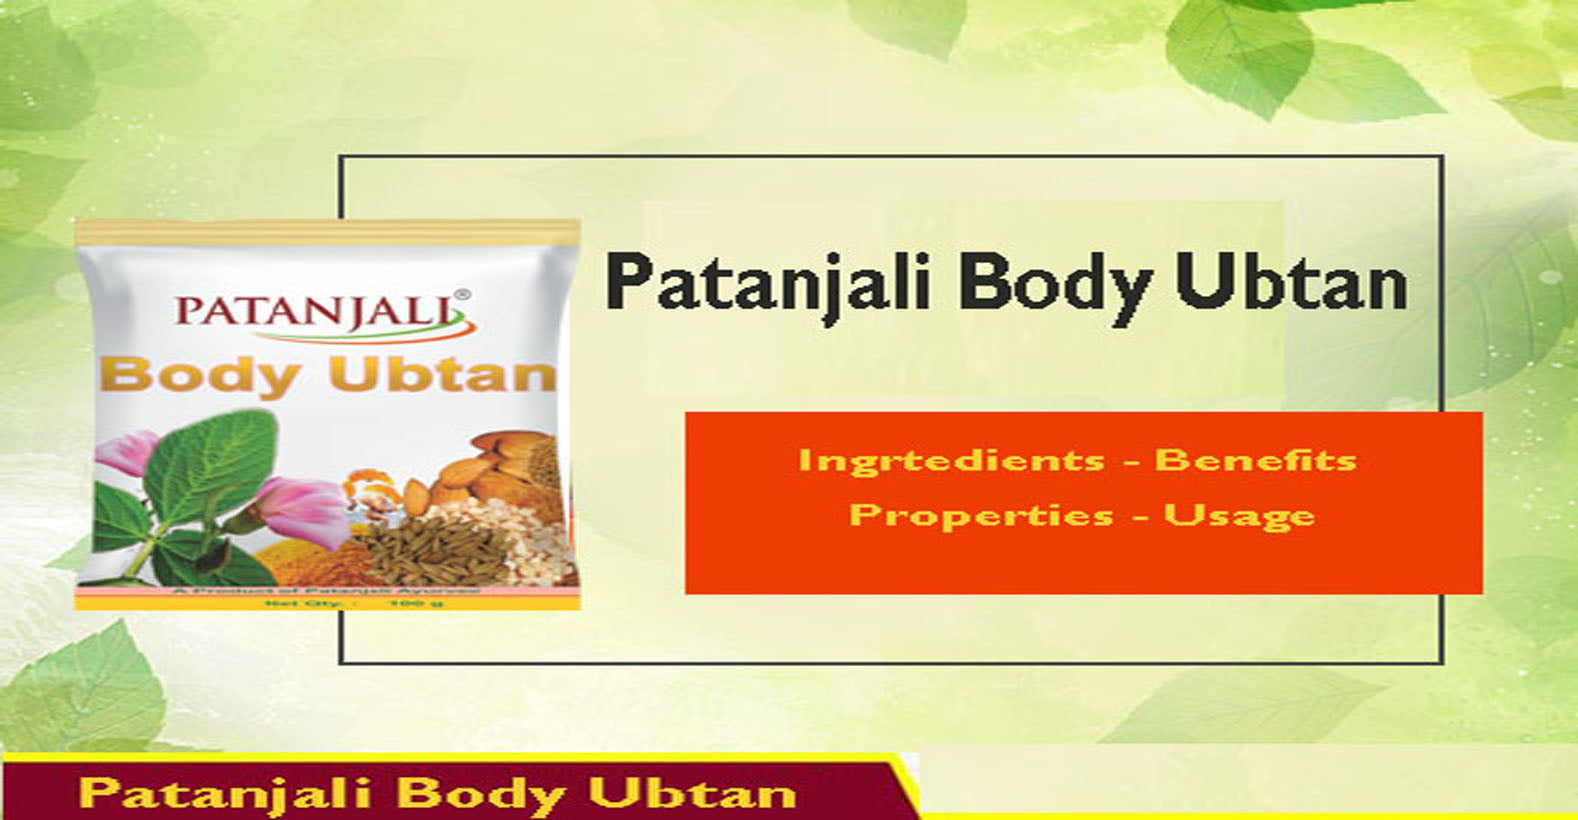 Patanjali Body Ubtan - Ingredients, Benefits, Properties, Usage